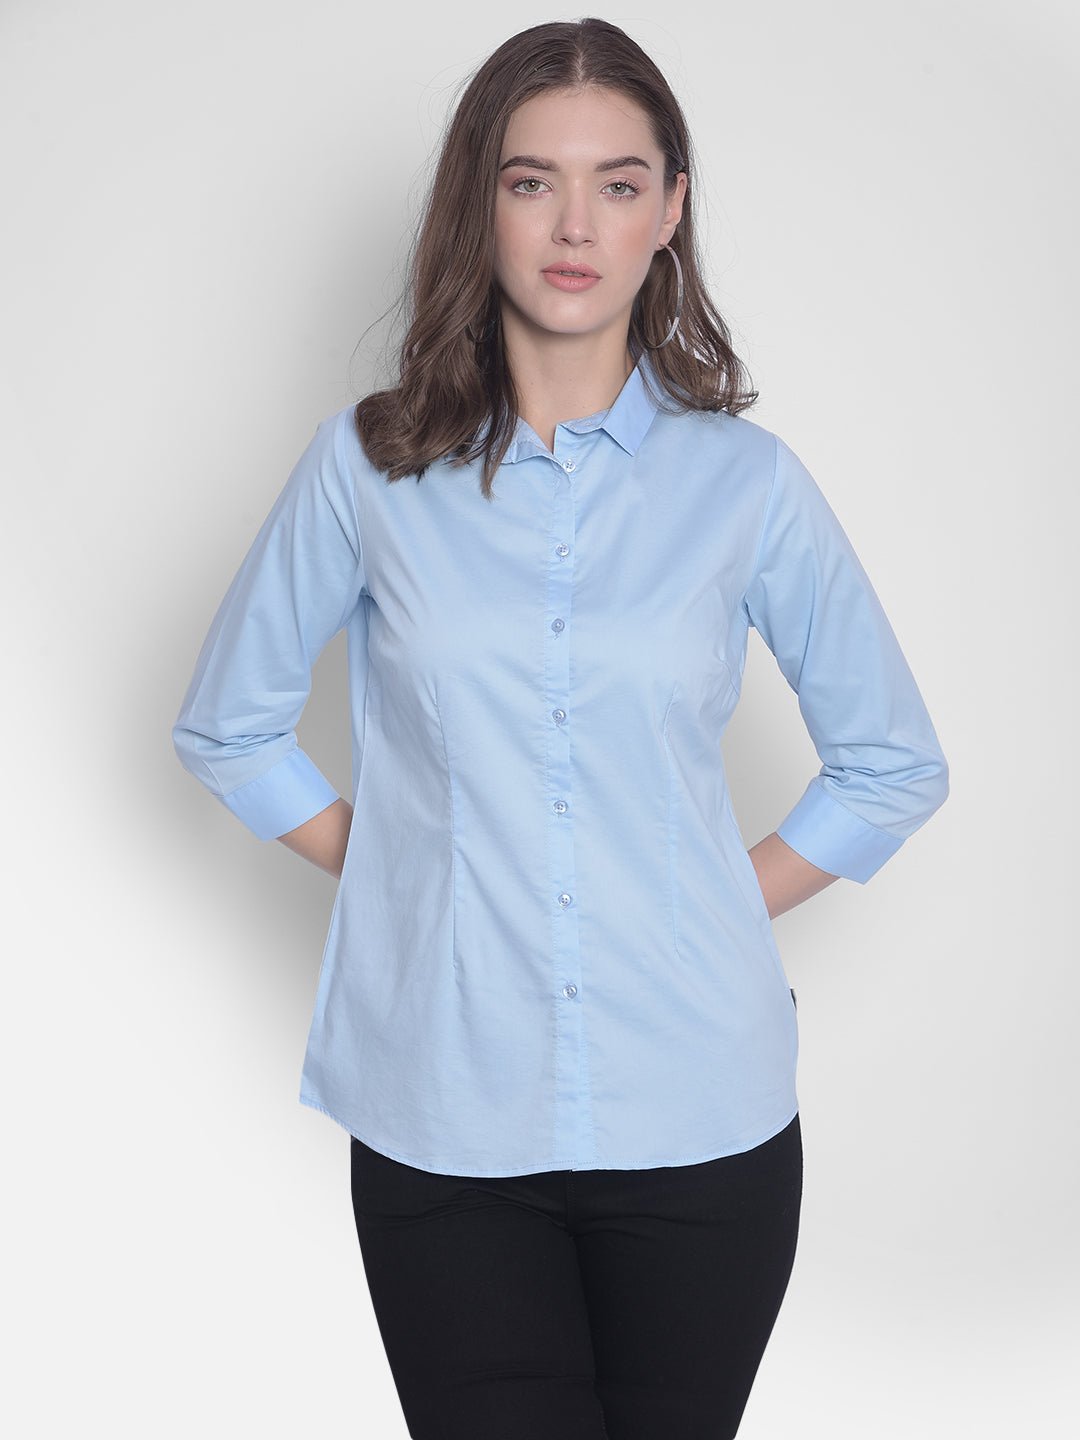 Blue Shirt-Women Shirts-Crimsoune Club